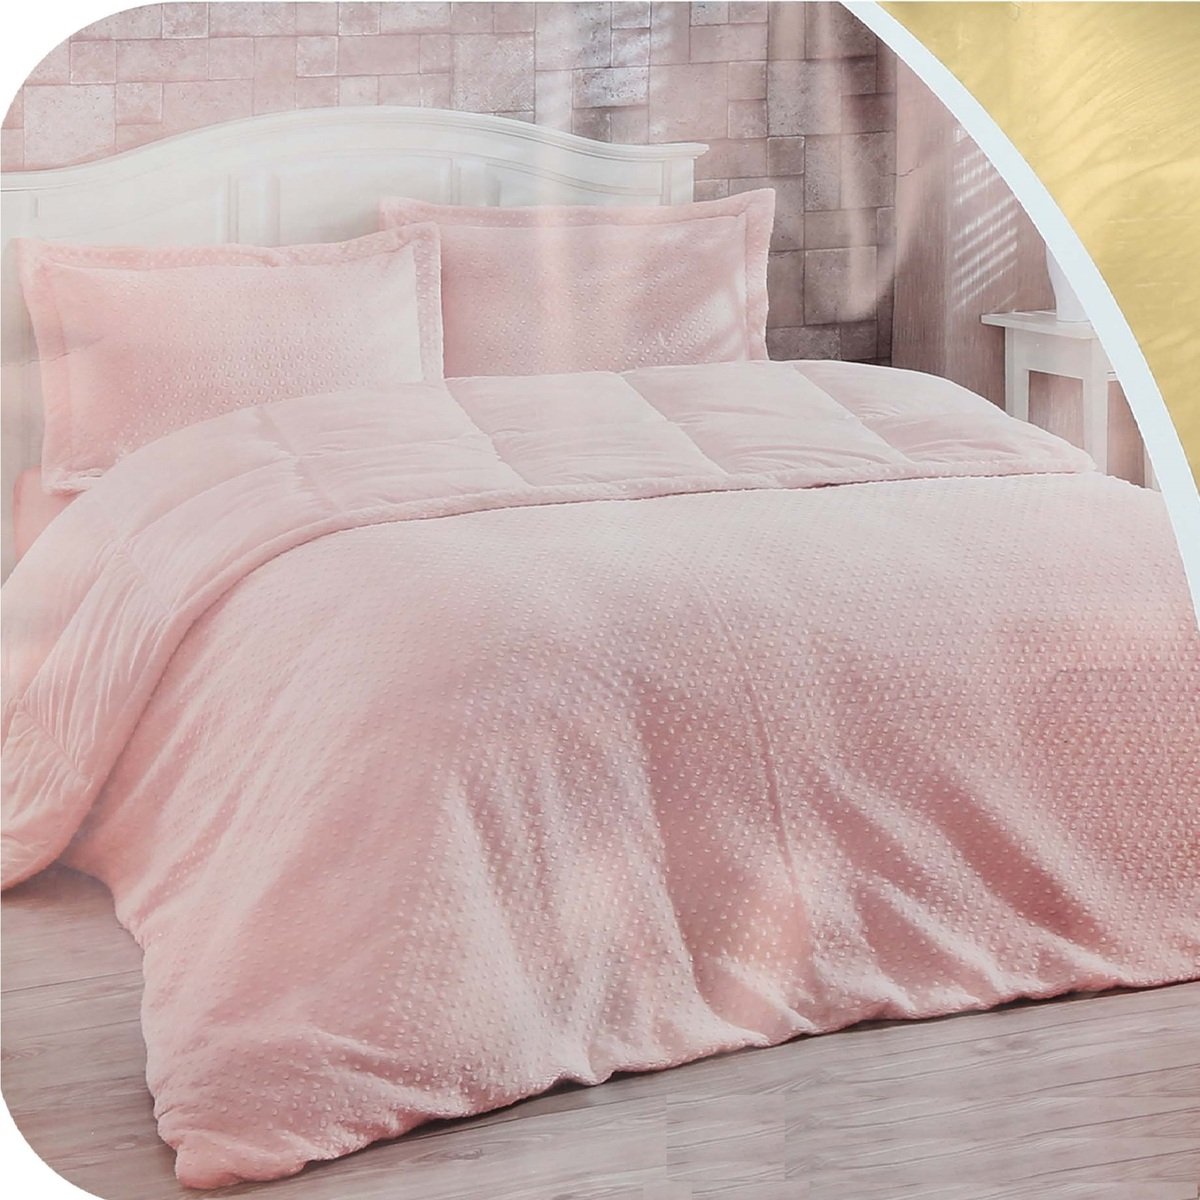 Cortigiani Bed Spread Set 3pcs Assorted colors & Designs